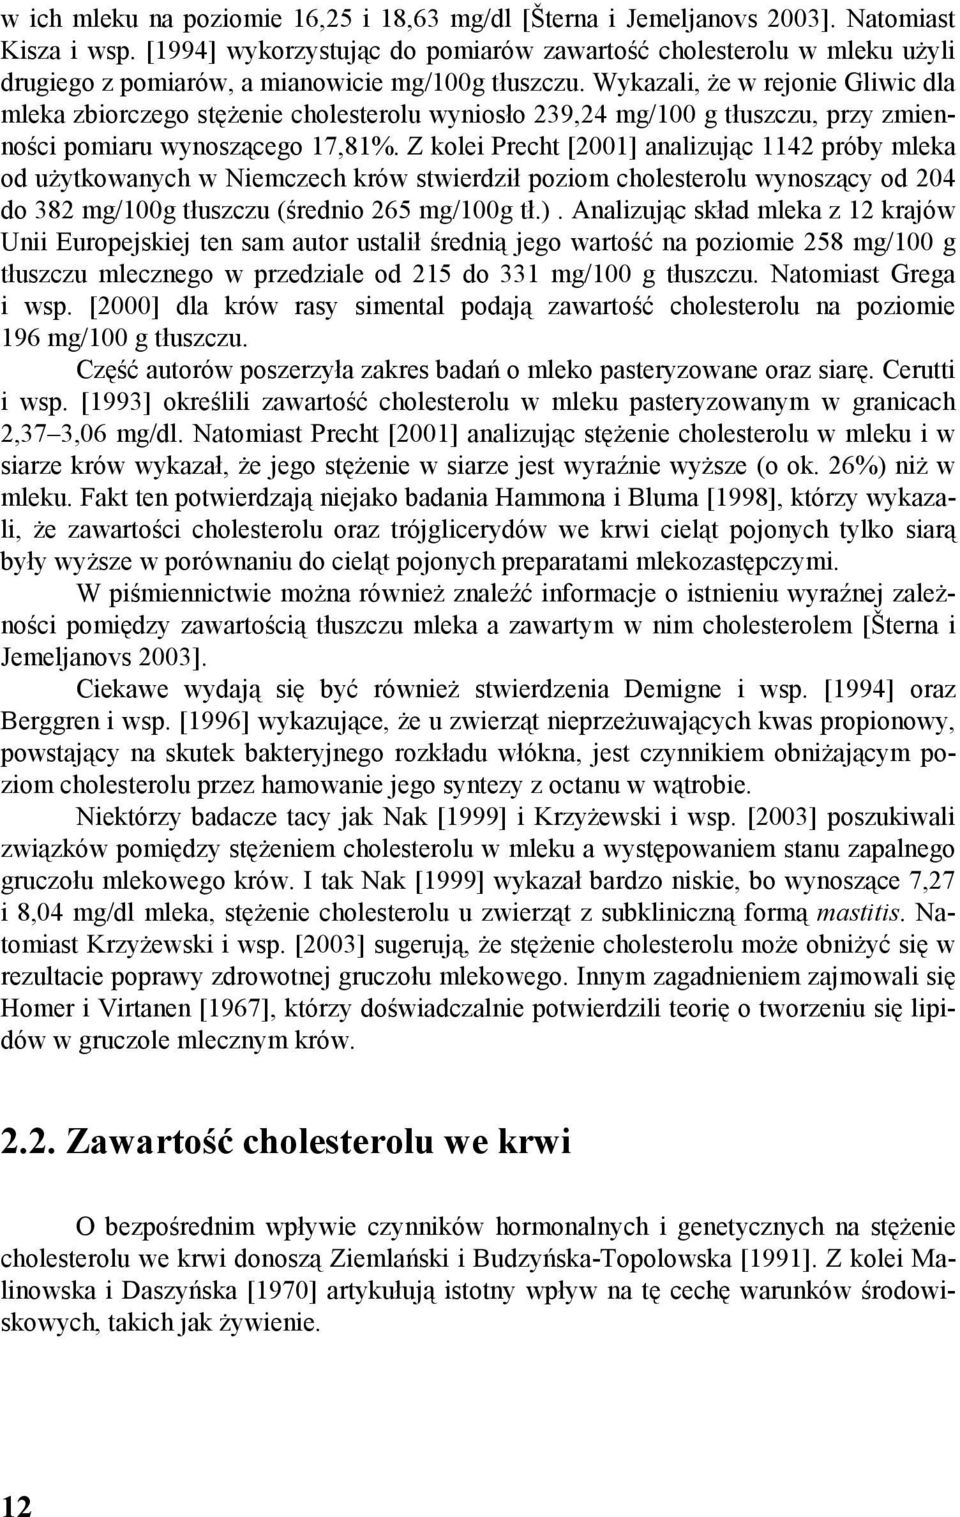 Wykazali, że w rejonie Gliwic dla mleka zbiorczego stężenie cholesterolu wyniosło 239,24 mg/100 g, przy zmienności pomiaru wynoszącego 17,81%.